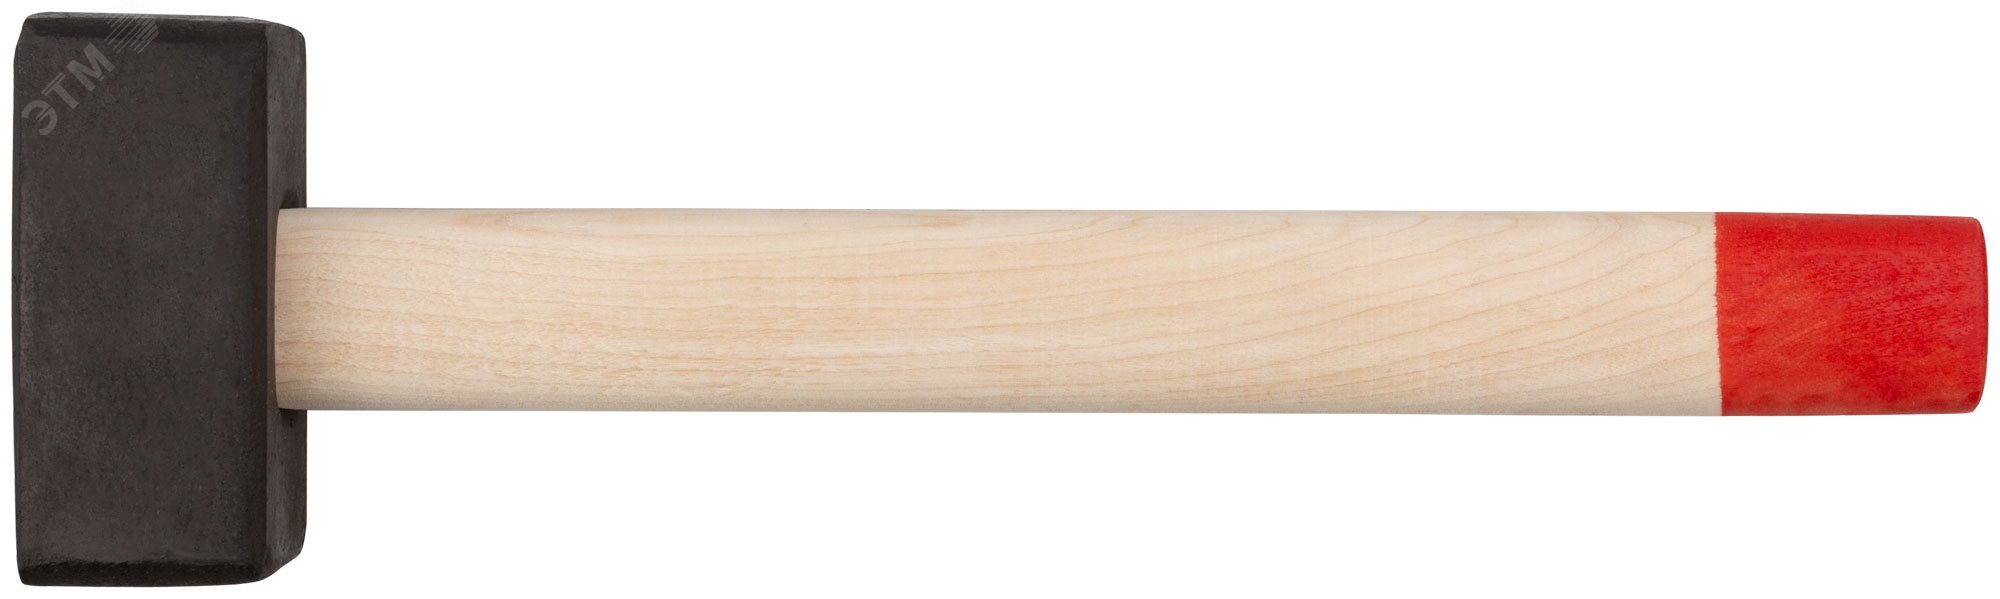 Кувалда кованая в сборе, деревянная ручка 2 кг 45022 КУРС РОС - превью